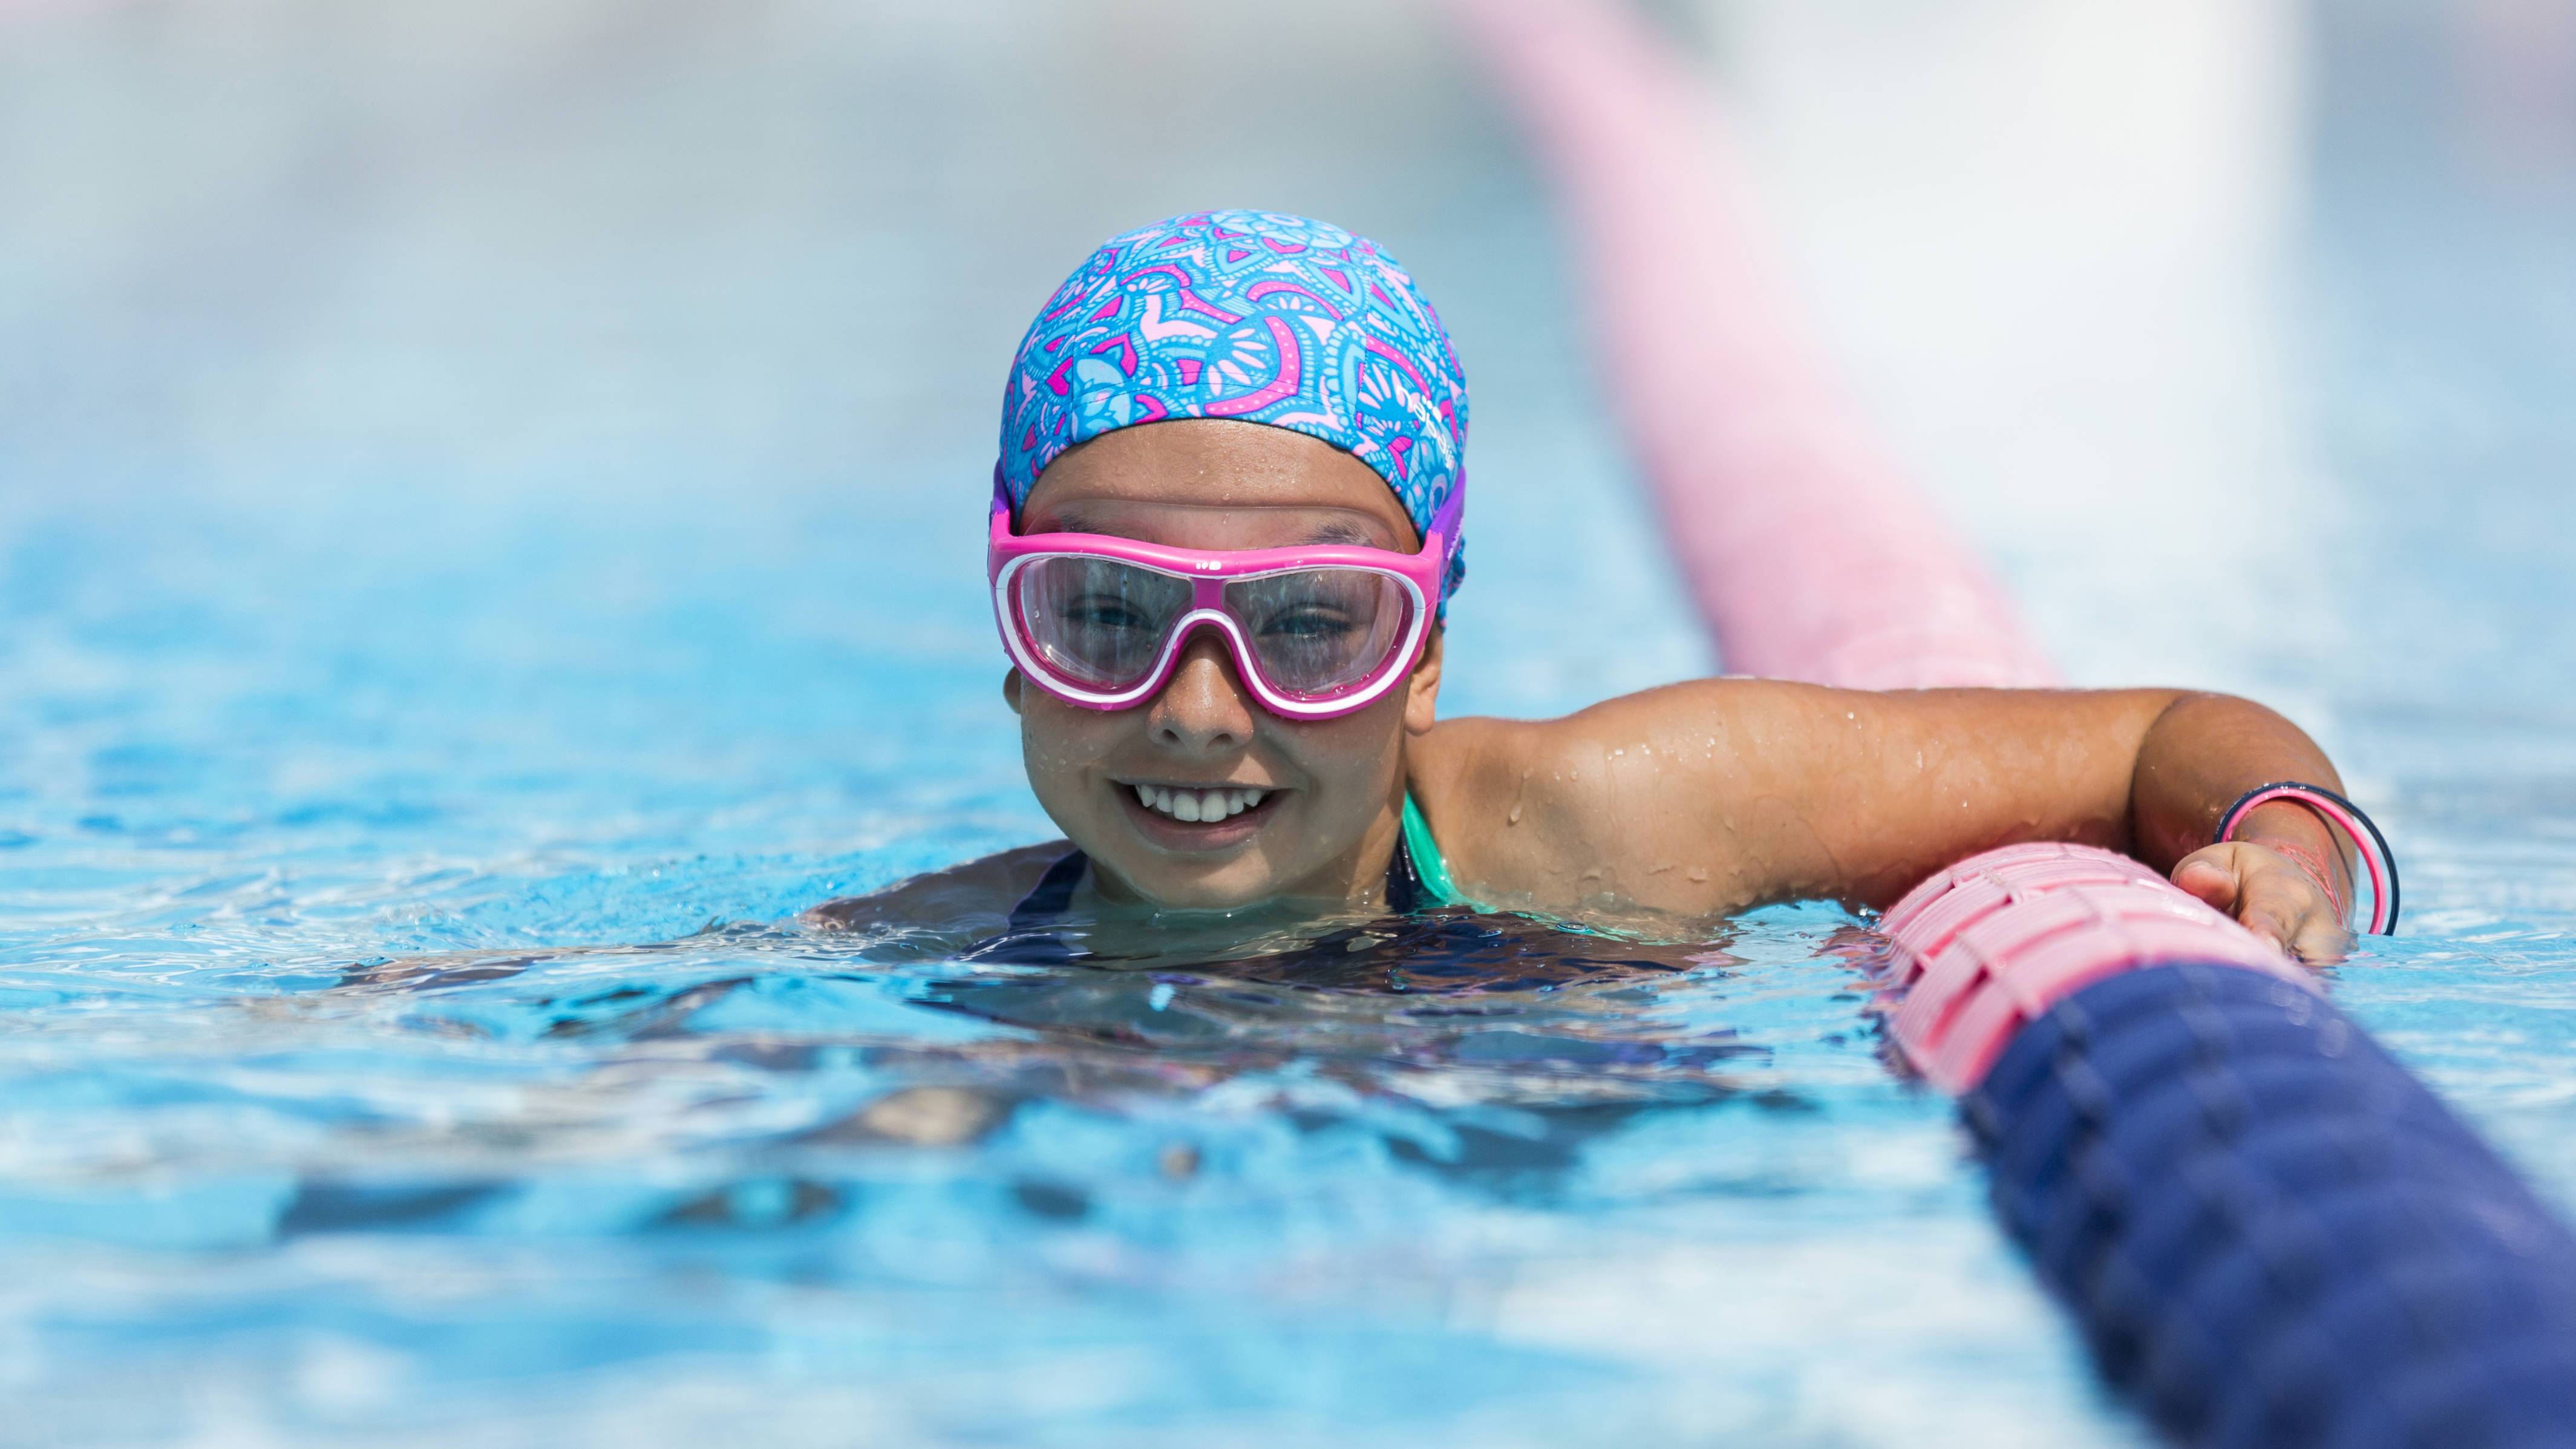 Как правильно выбрать очки для плавания в бассейне